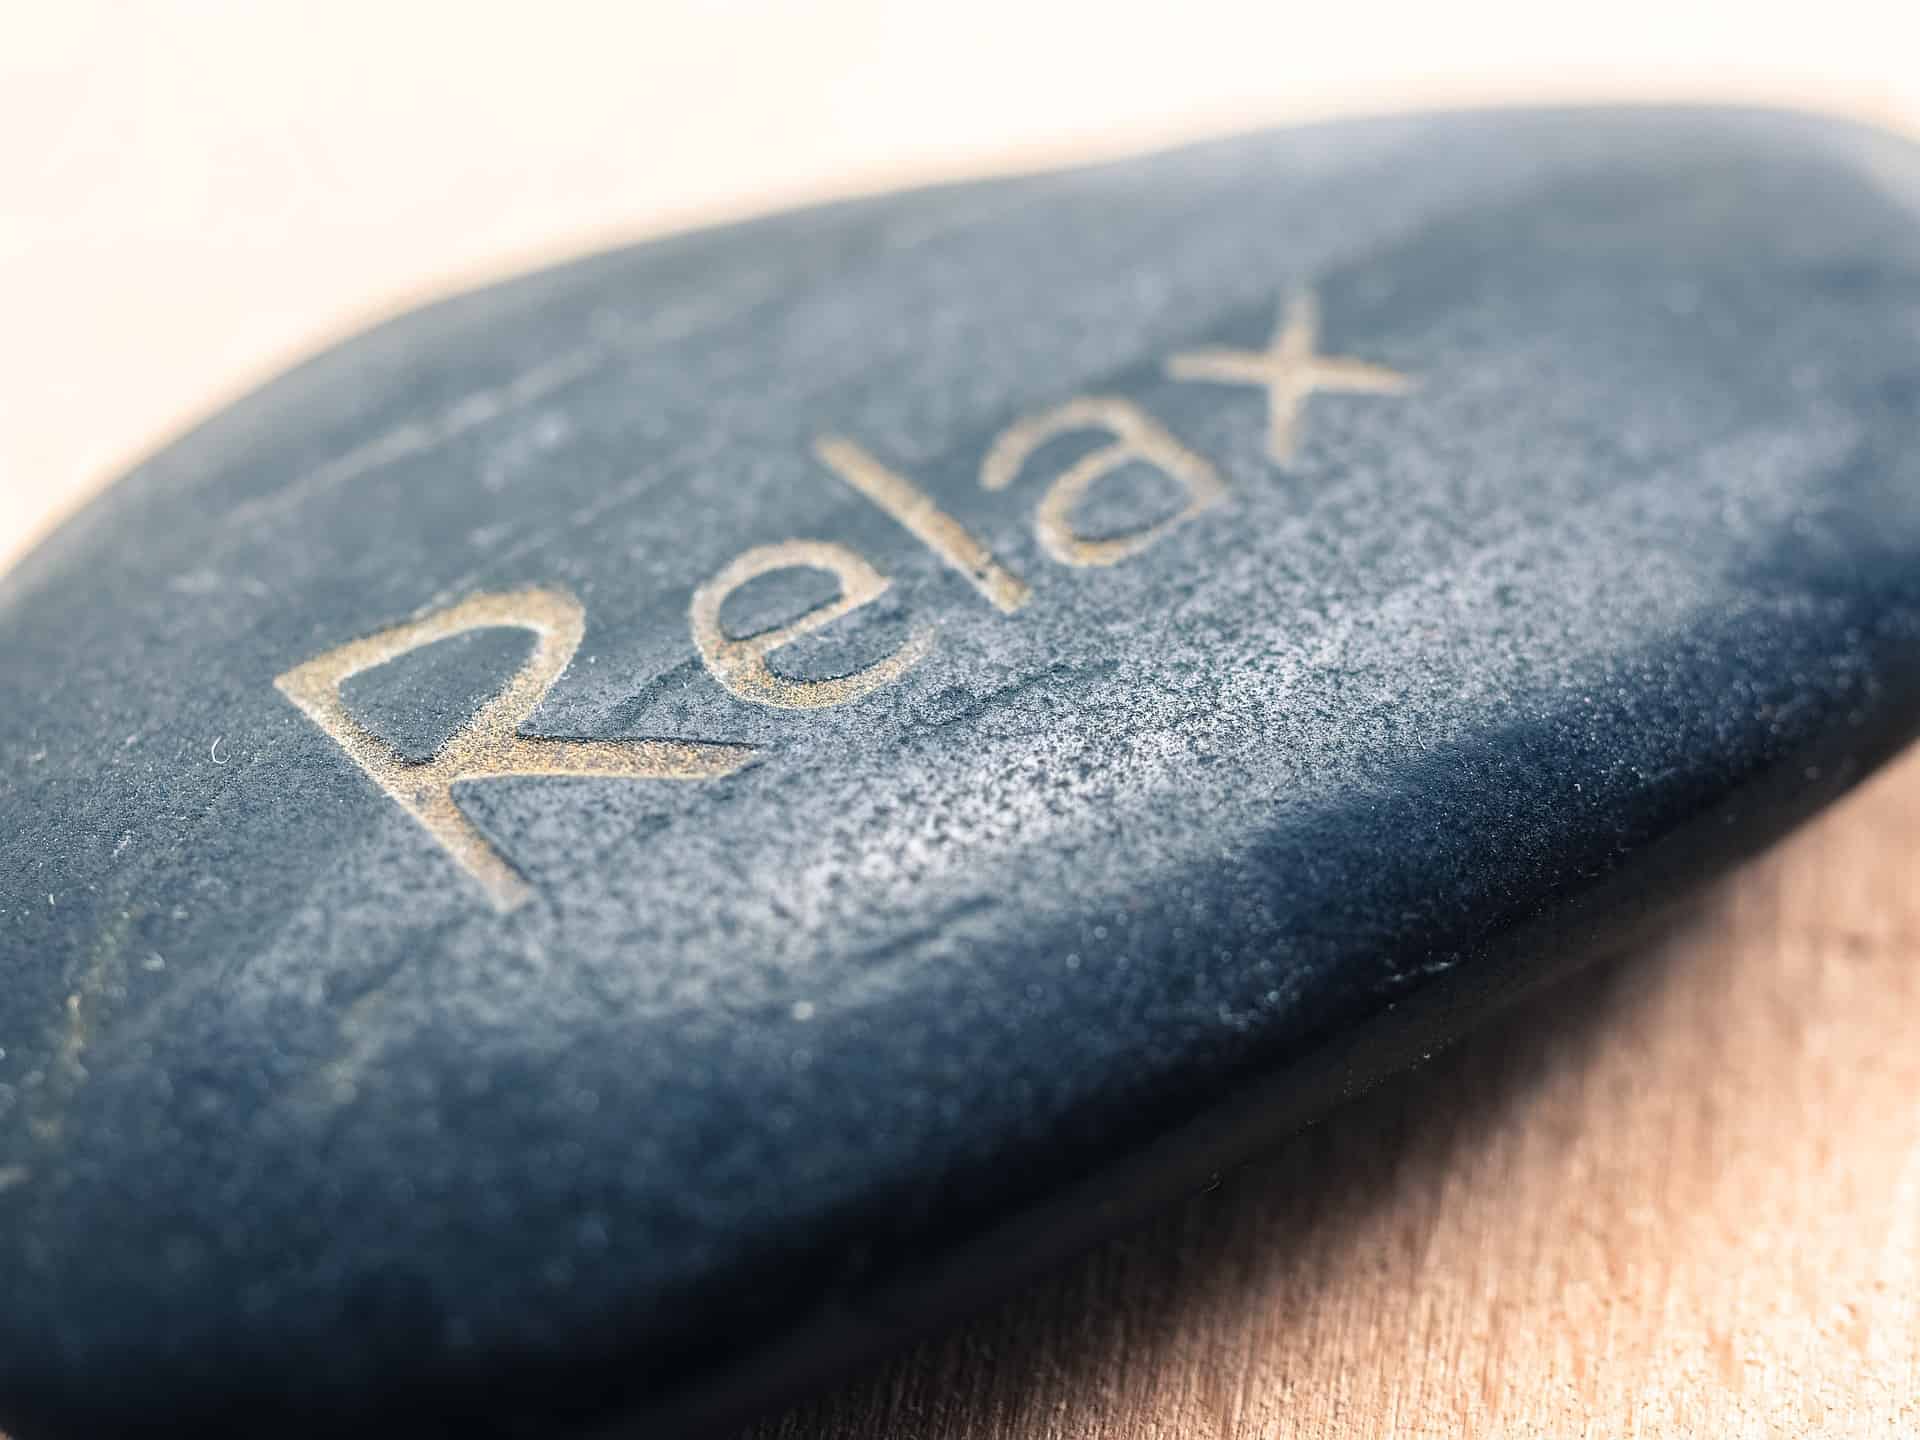 Entspannung geschrieben auf einen Stein. Diese Symbolik wird oft im Zen verwendet. Die Zenmönche sind Meister der Entspannung. Ihre Übung besteht aus einfacher Meditation und Gehen.